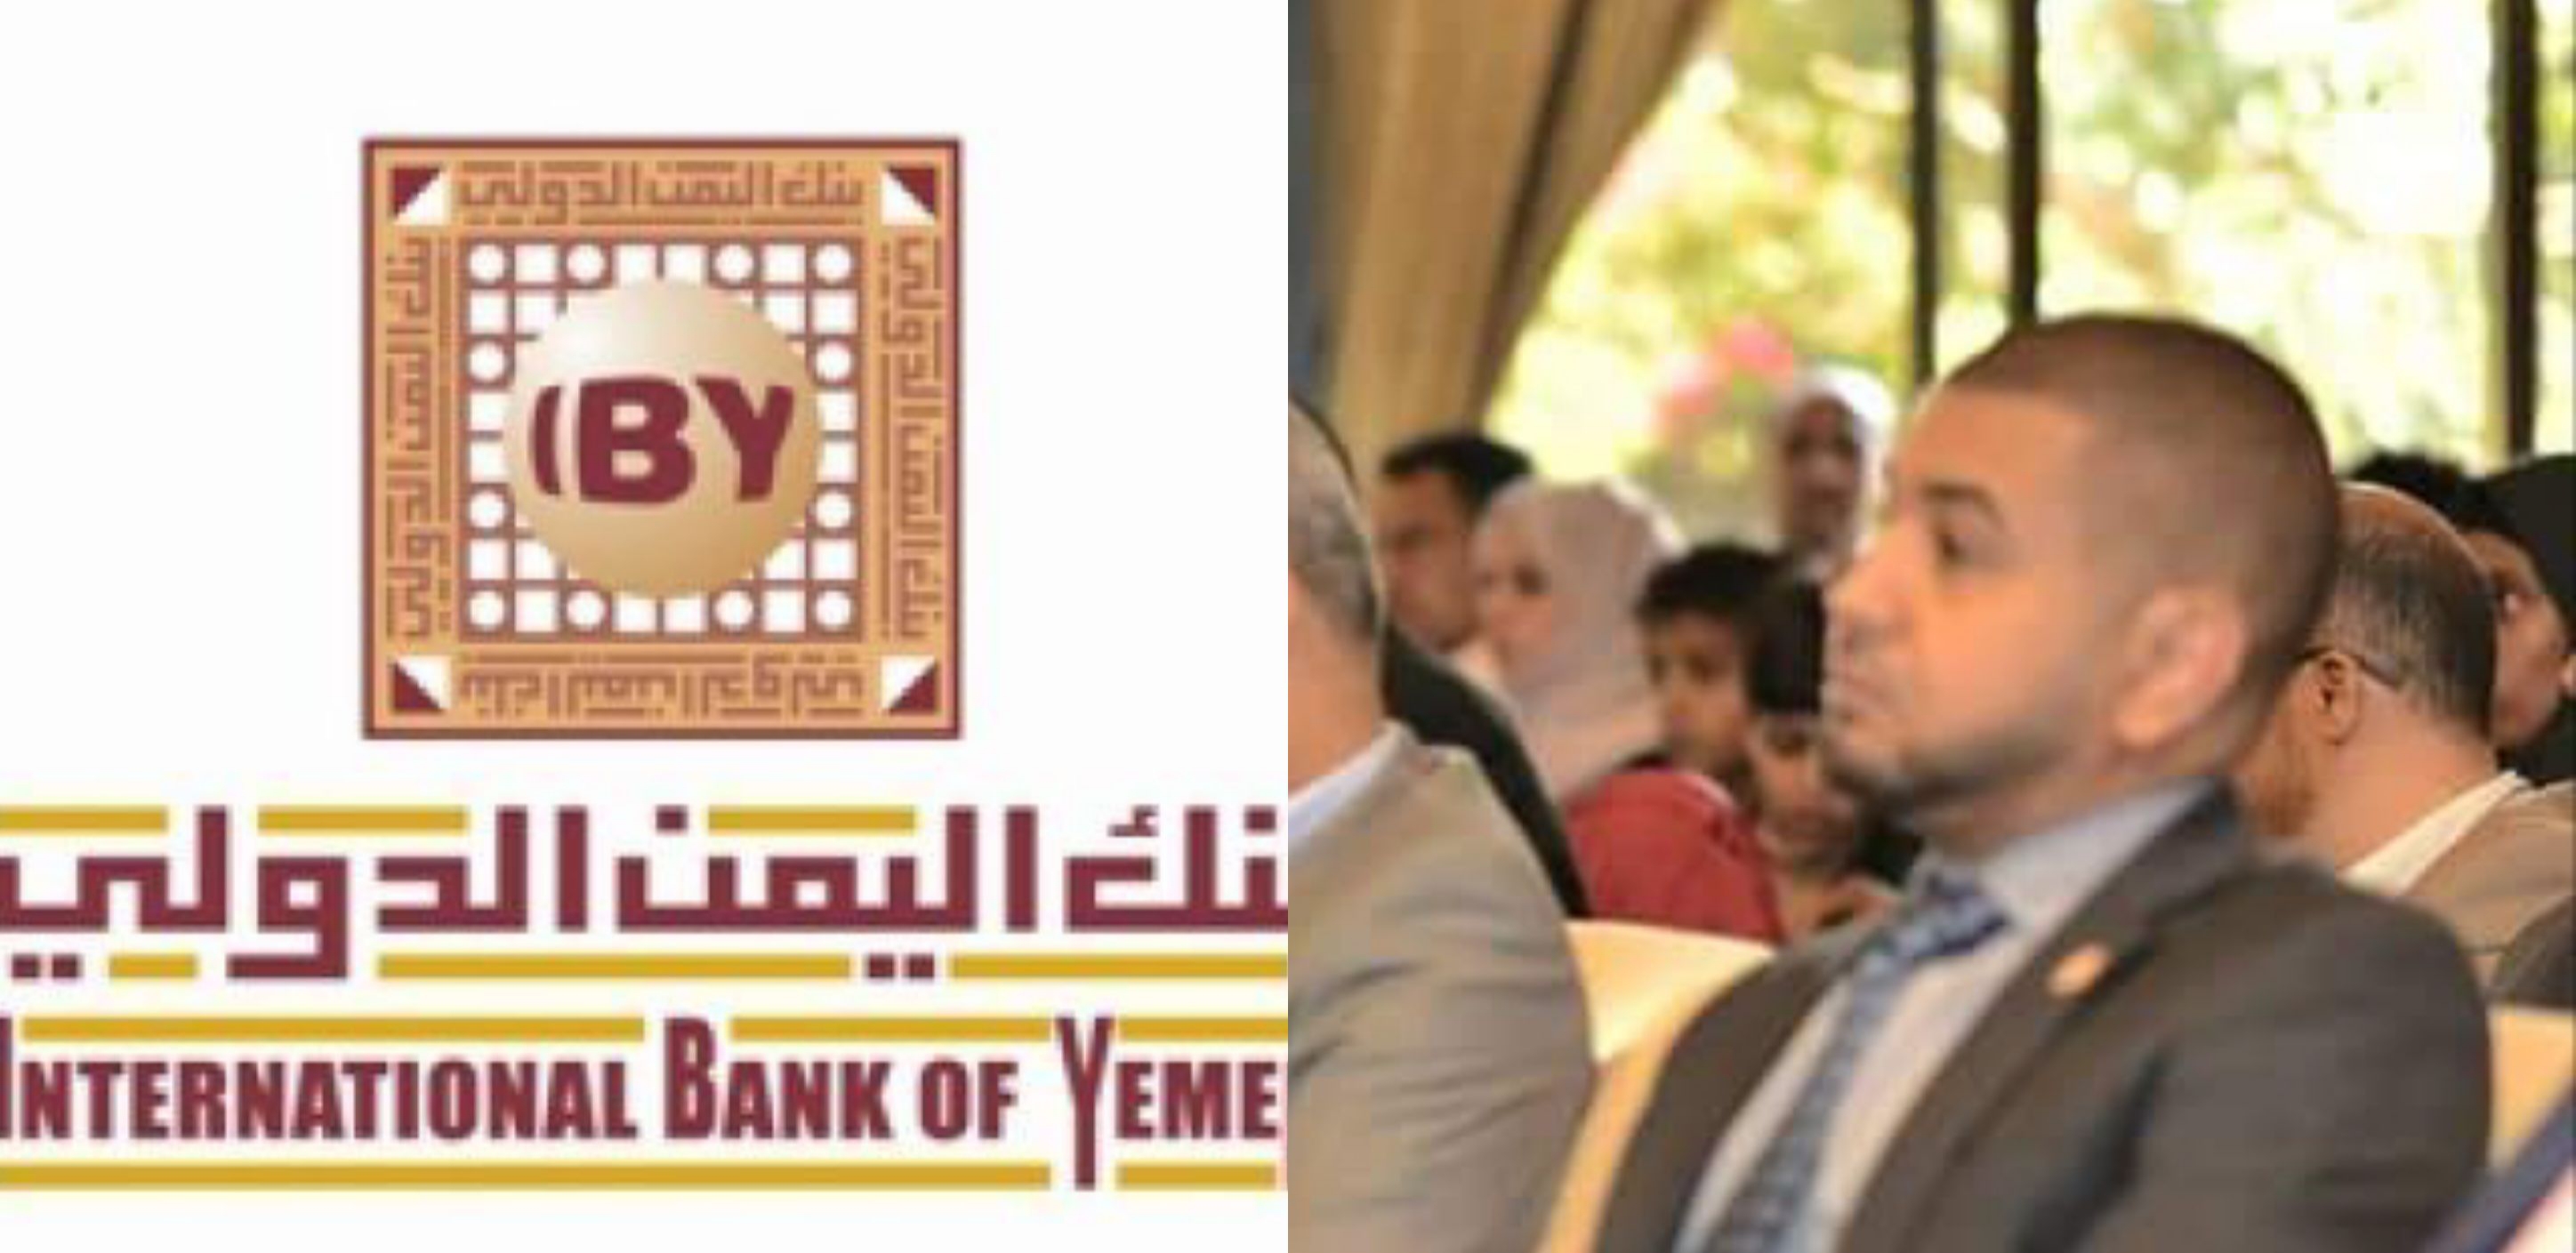 خبراء اقتصاد يحذرون :بنك اليمن الدولي بصنعاءعلى وشك الانهيار والافلاس بعد تورطة مدير البنك بقضايا فساد ونصب وتلاعب بأرصدة العملاء والعملة ..